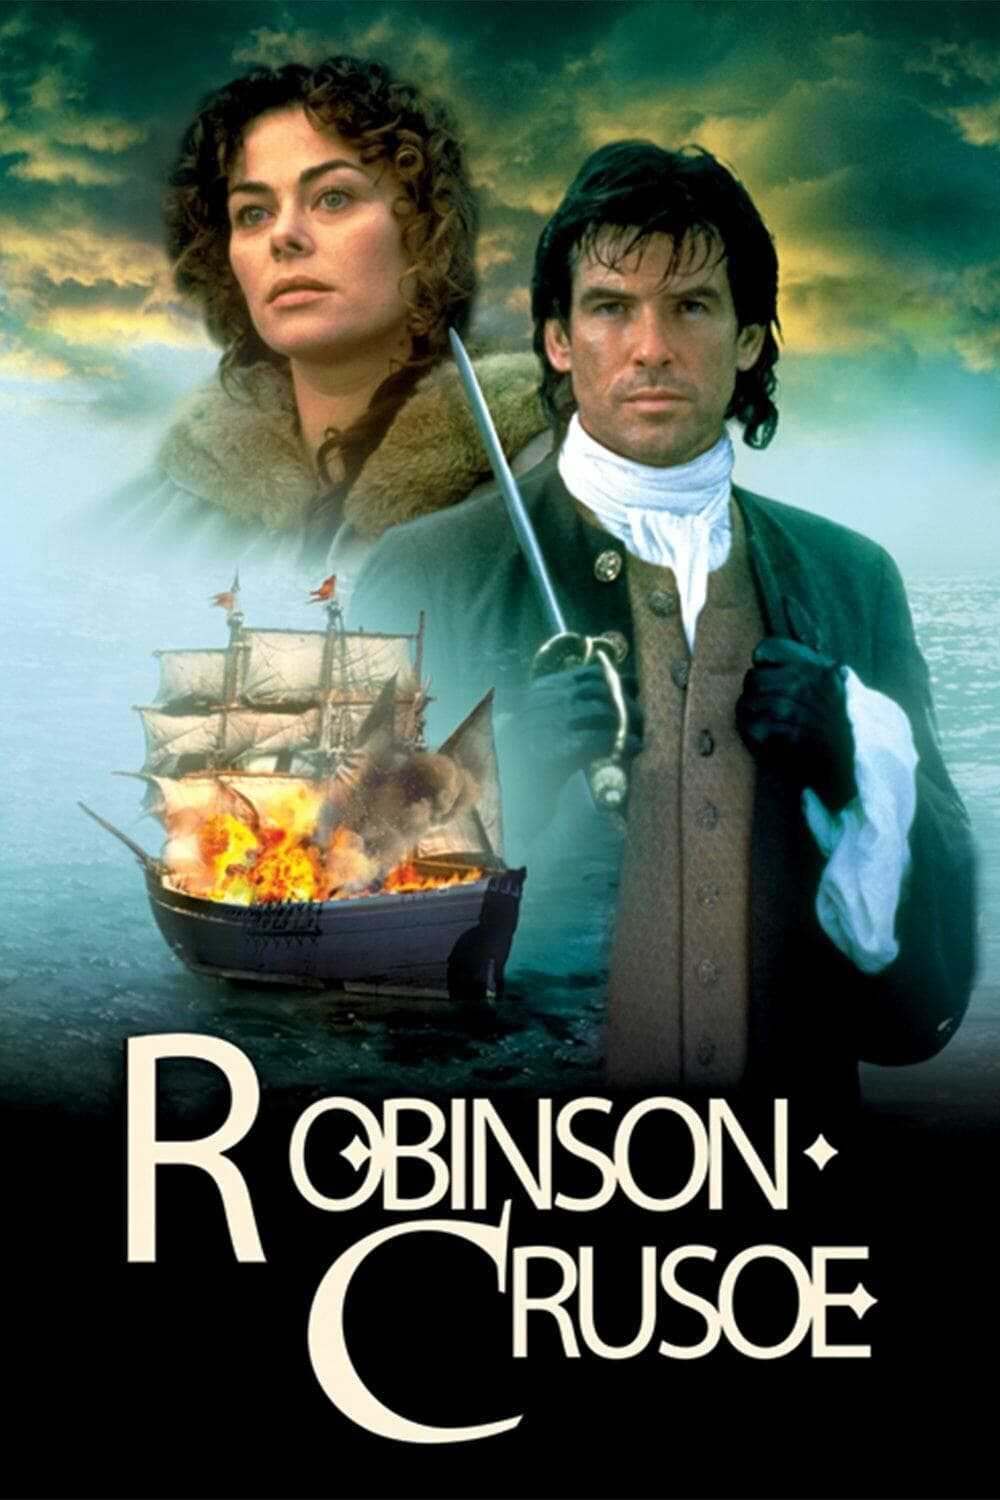 Robinson trên đảo hoang - Robinson crusoe